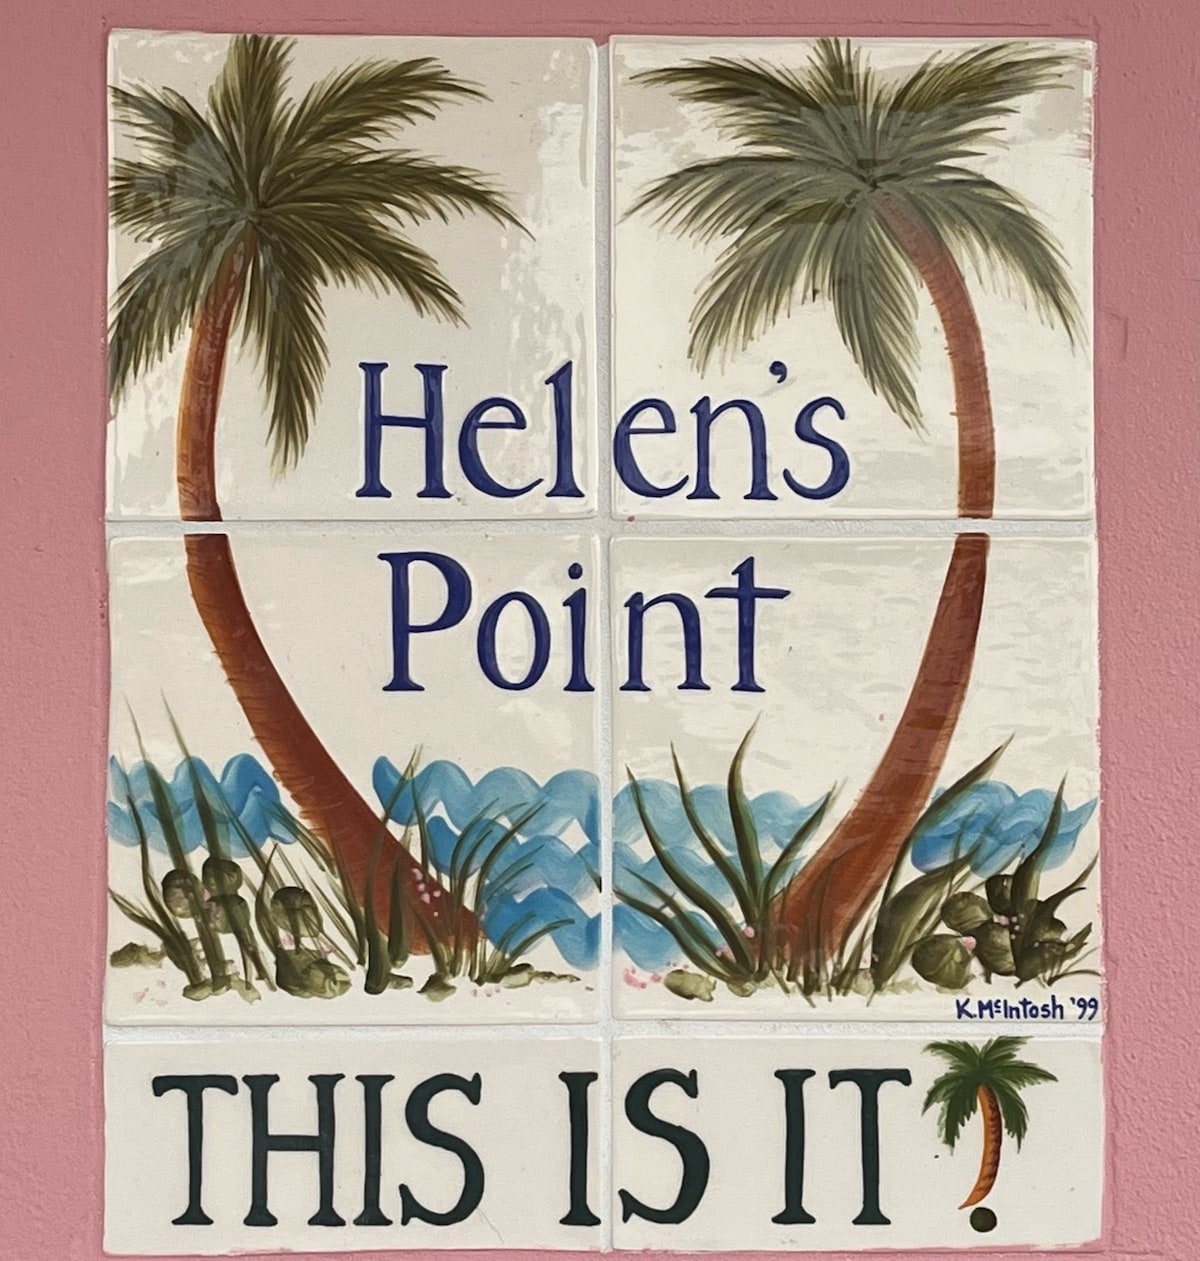 Helen's Point